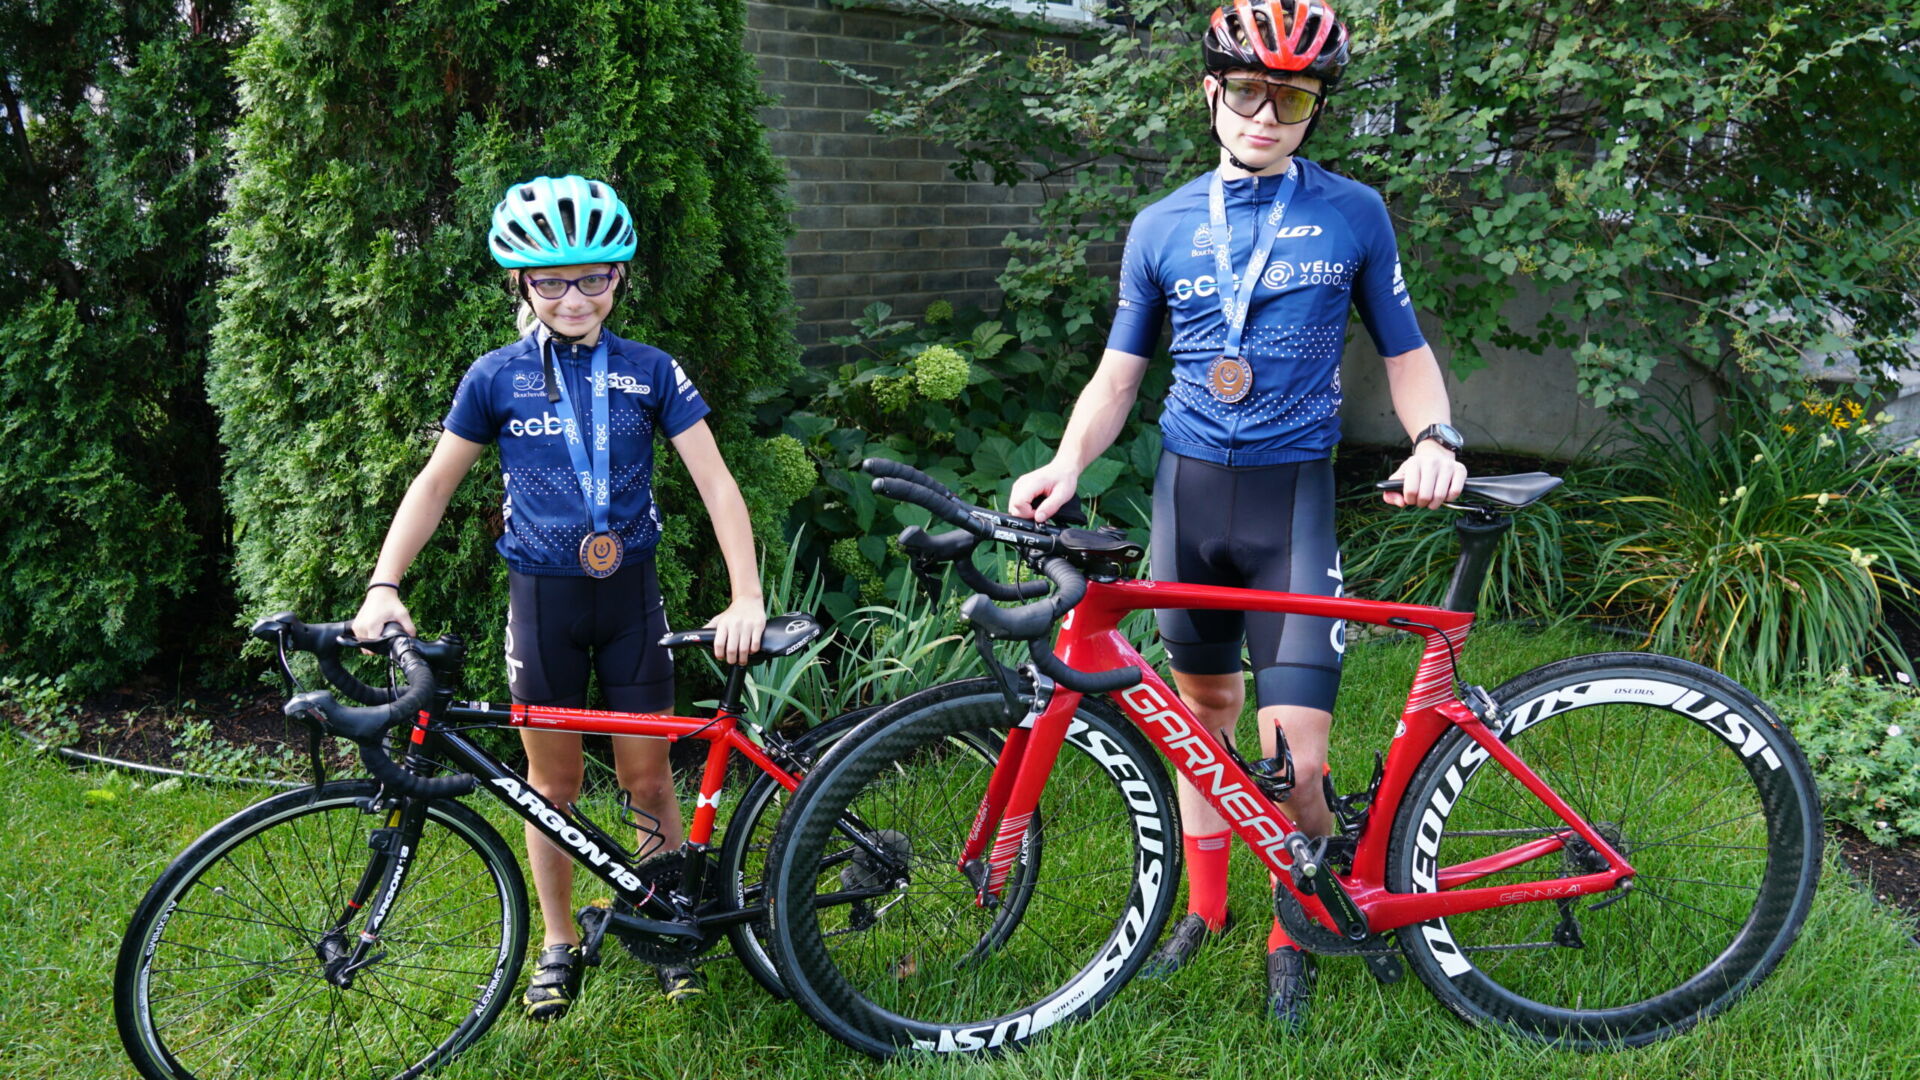 Les Maskoutains Laurence et Justin Demers ont chacun mis la main sur une médaille de bronze lors d’une épreuve du championnat québécois espoir de cyclisme sur route. Photo gracieuseté